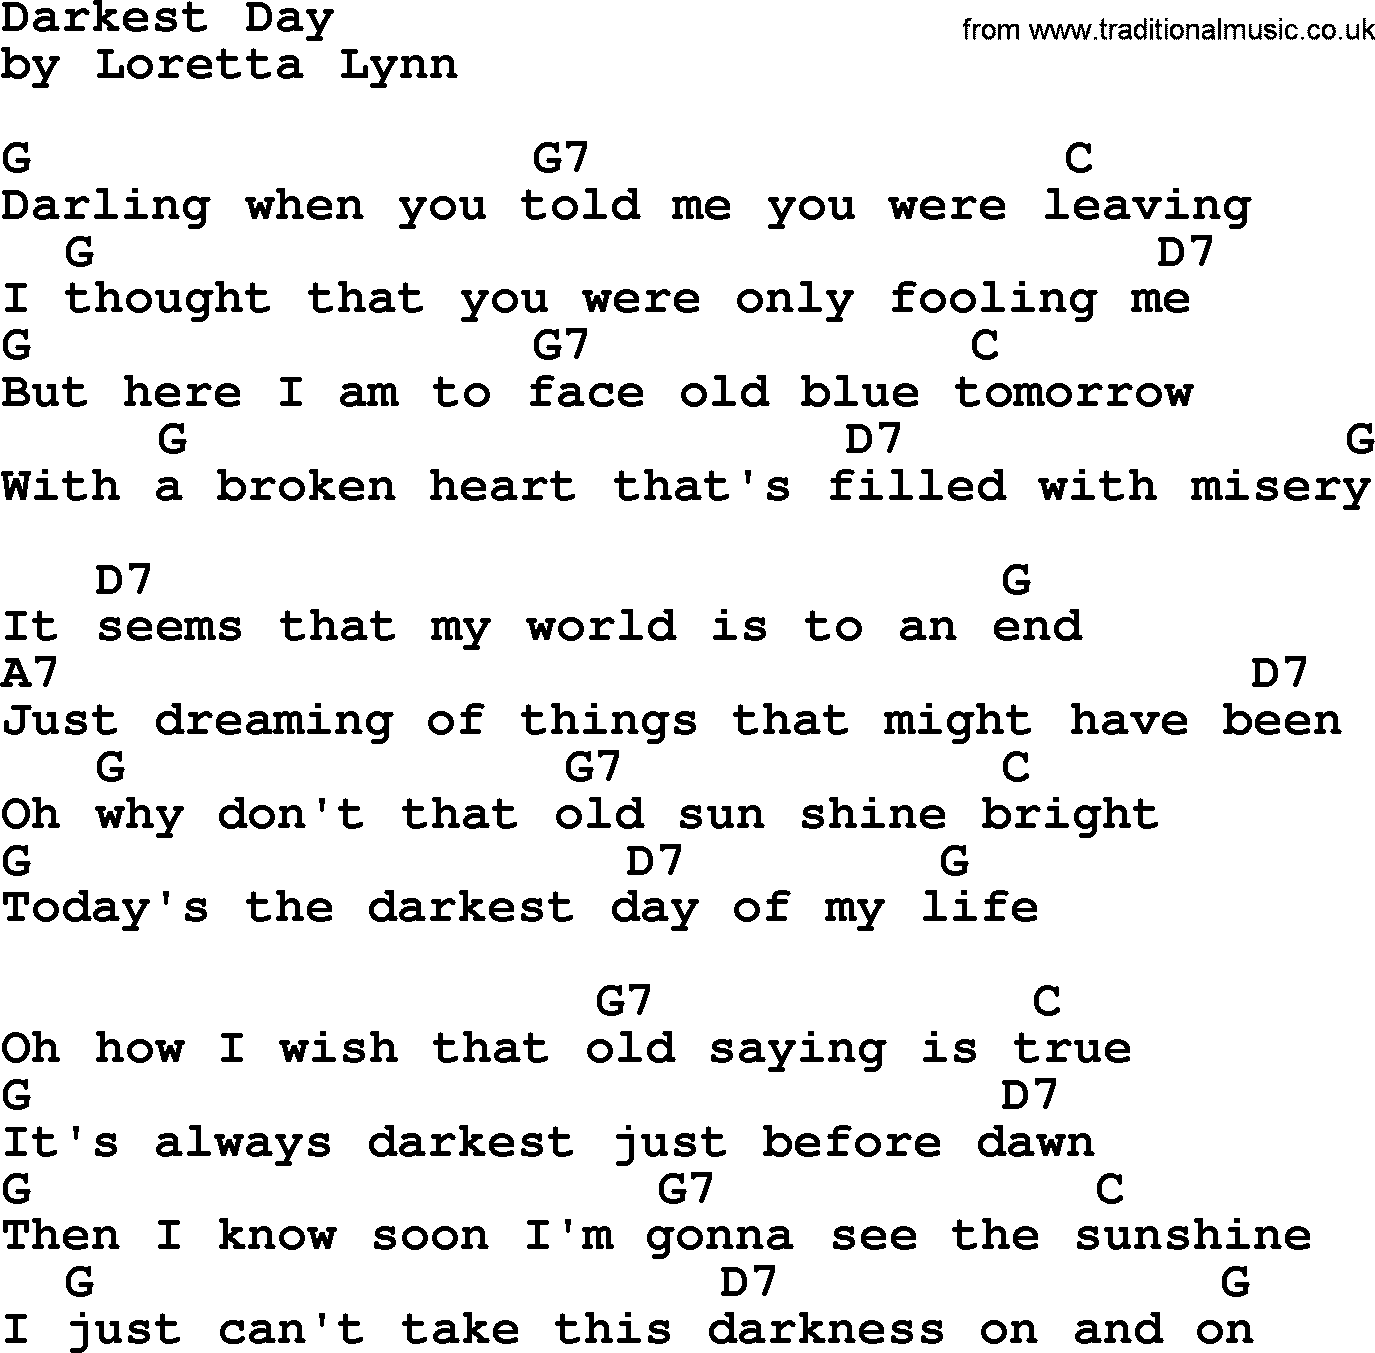 Loretta Lynn song: Darkest Day lyrics and chords